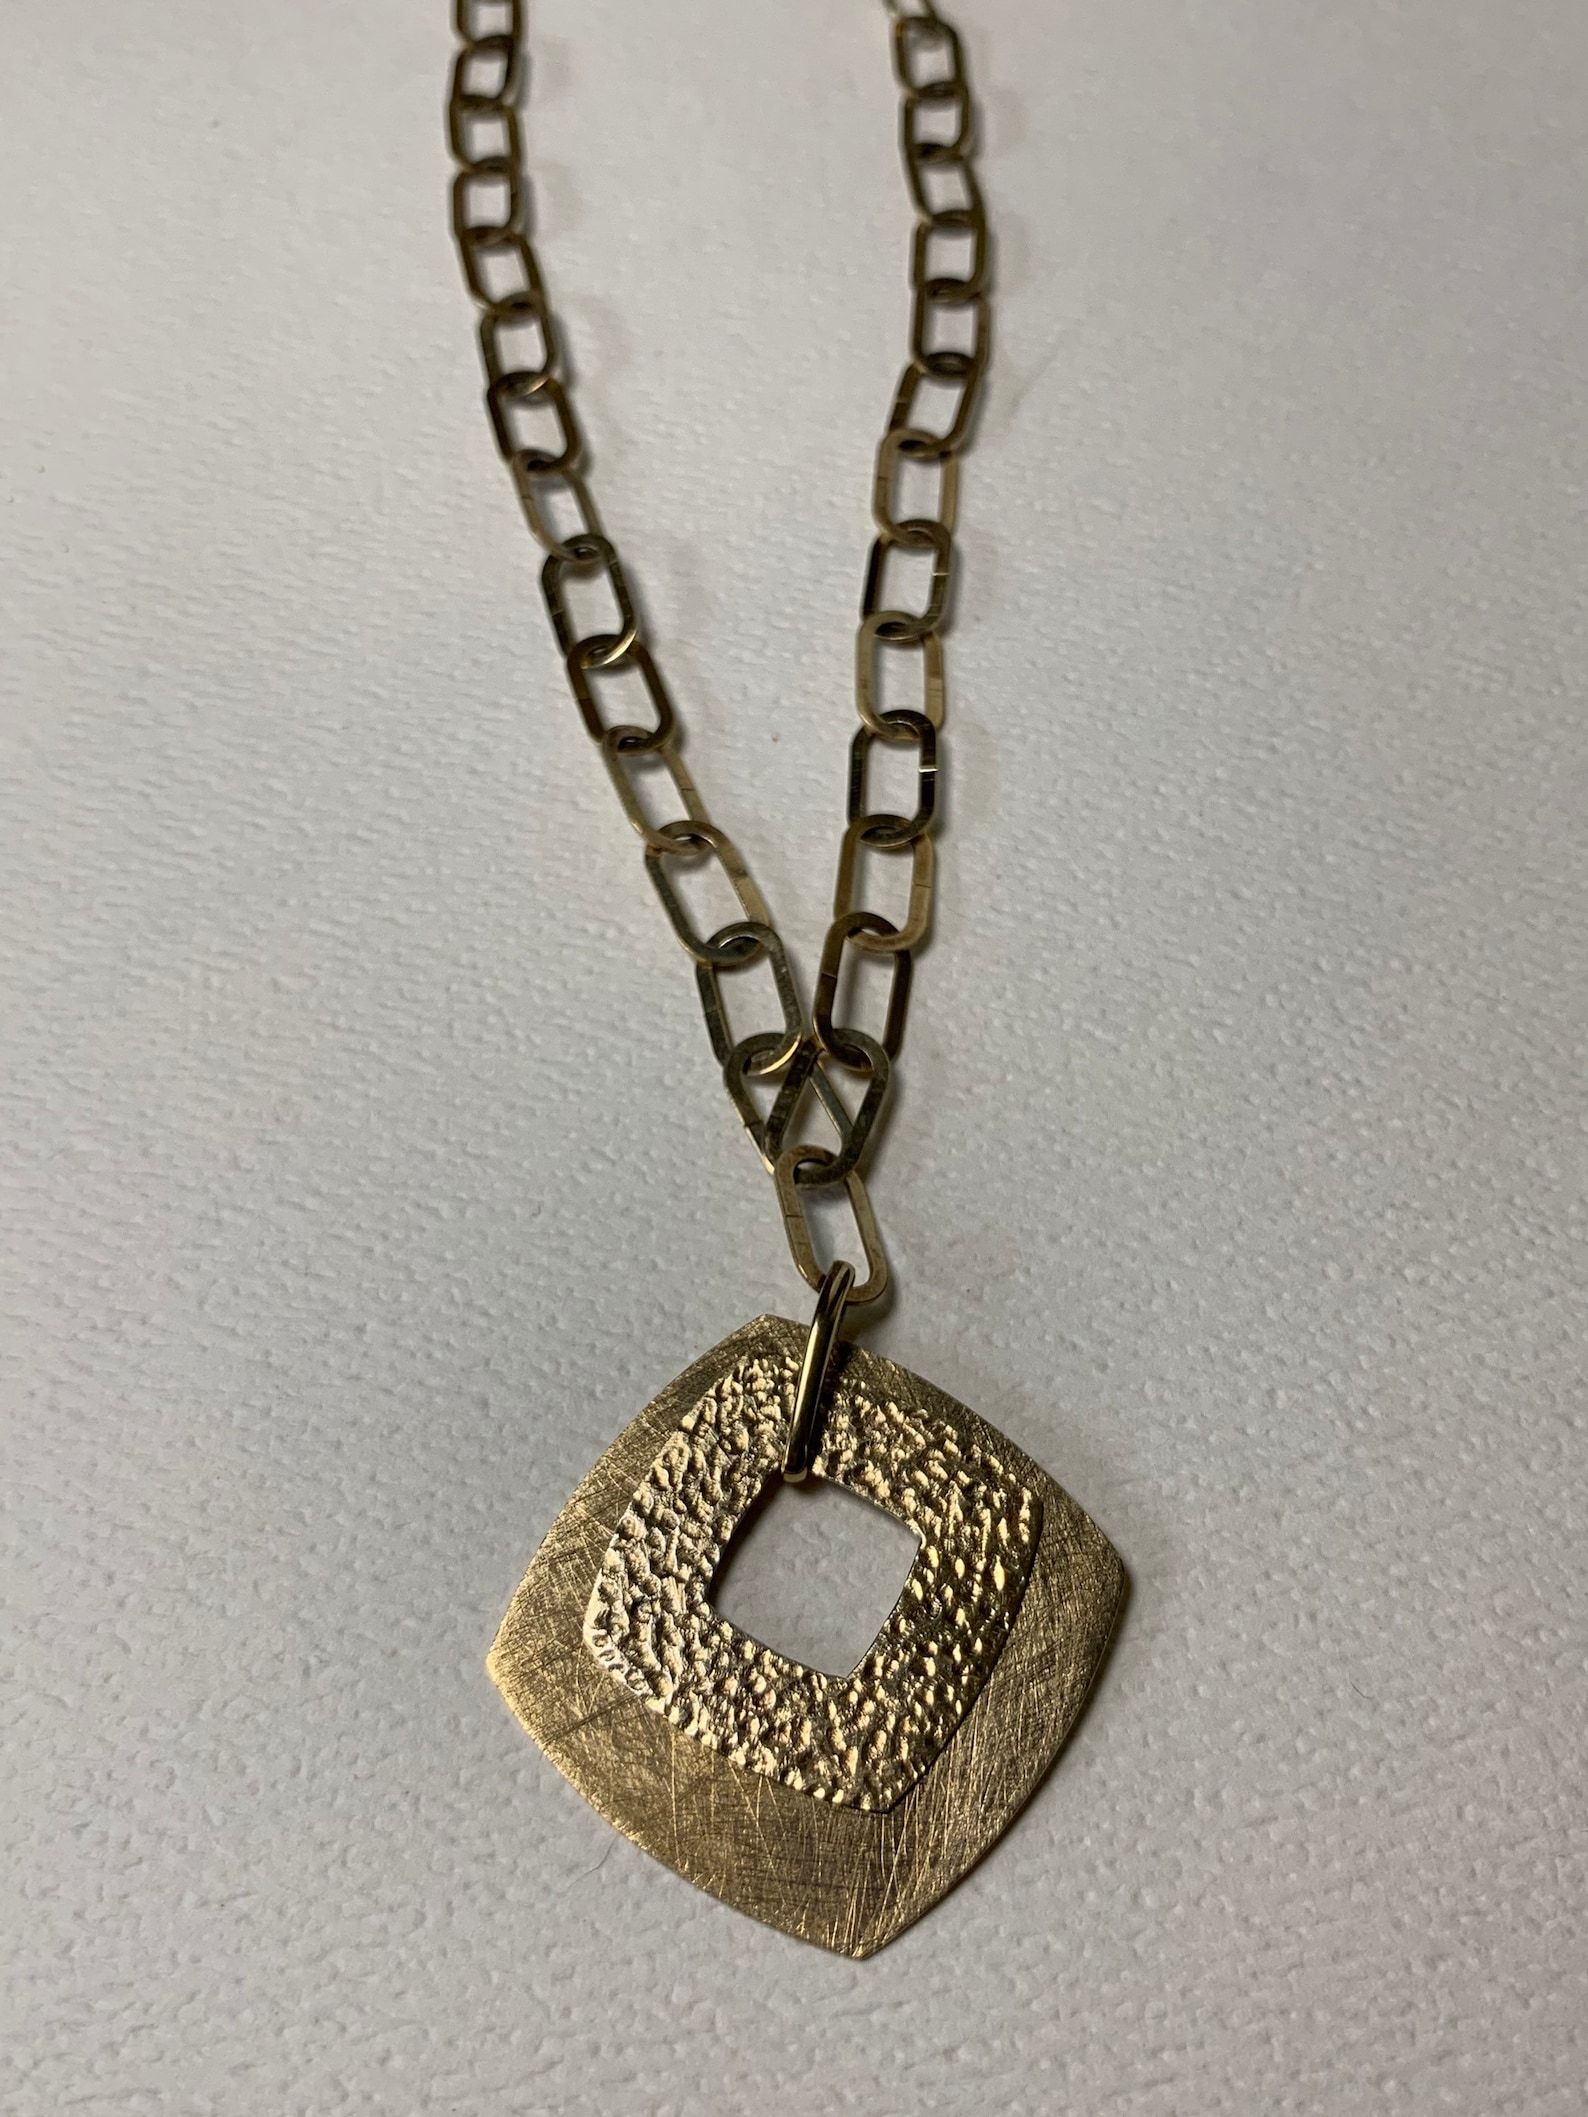 Vintage Brushed Gold Square Pendant Necklace Open Light Link | Etsy